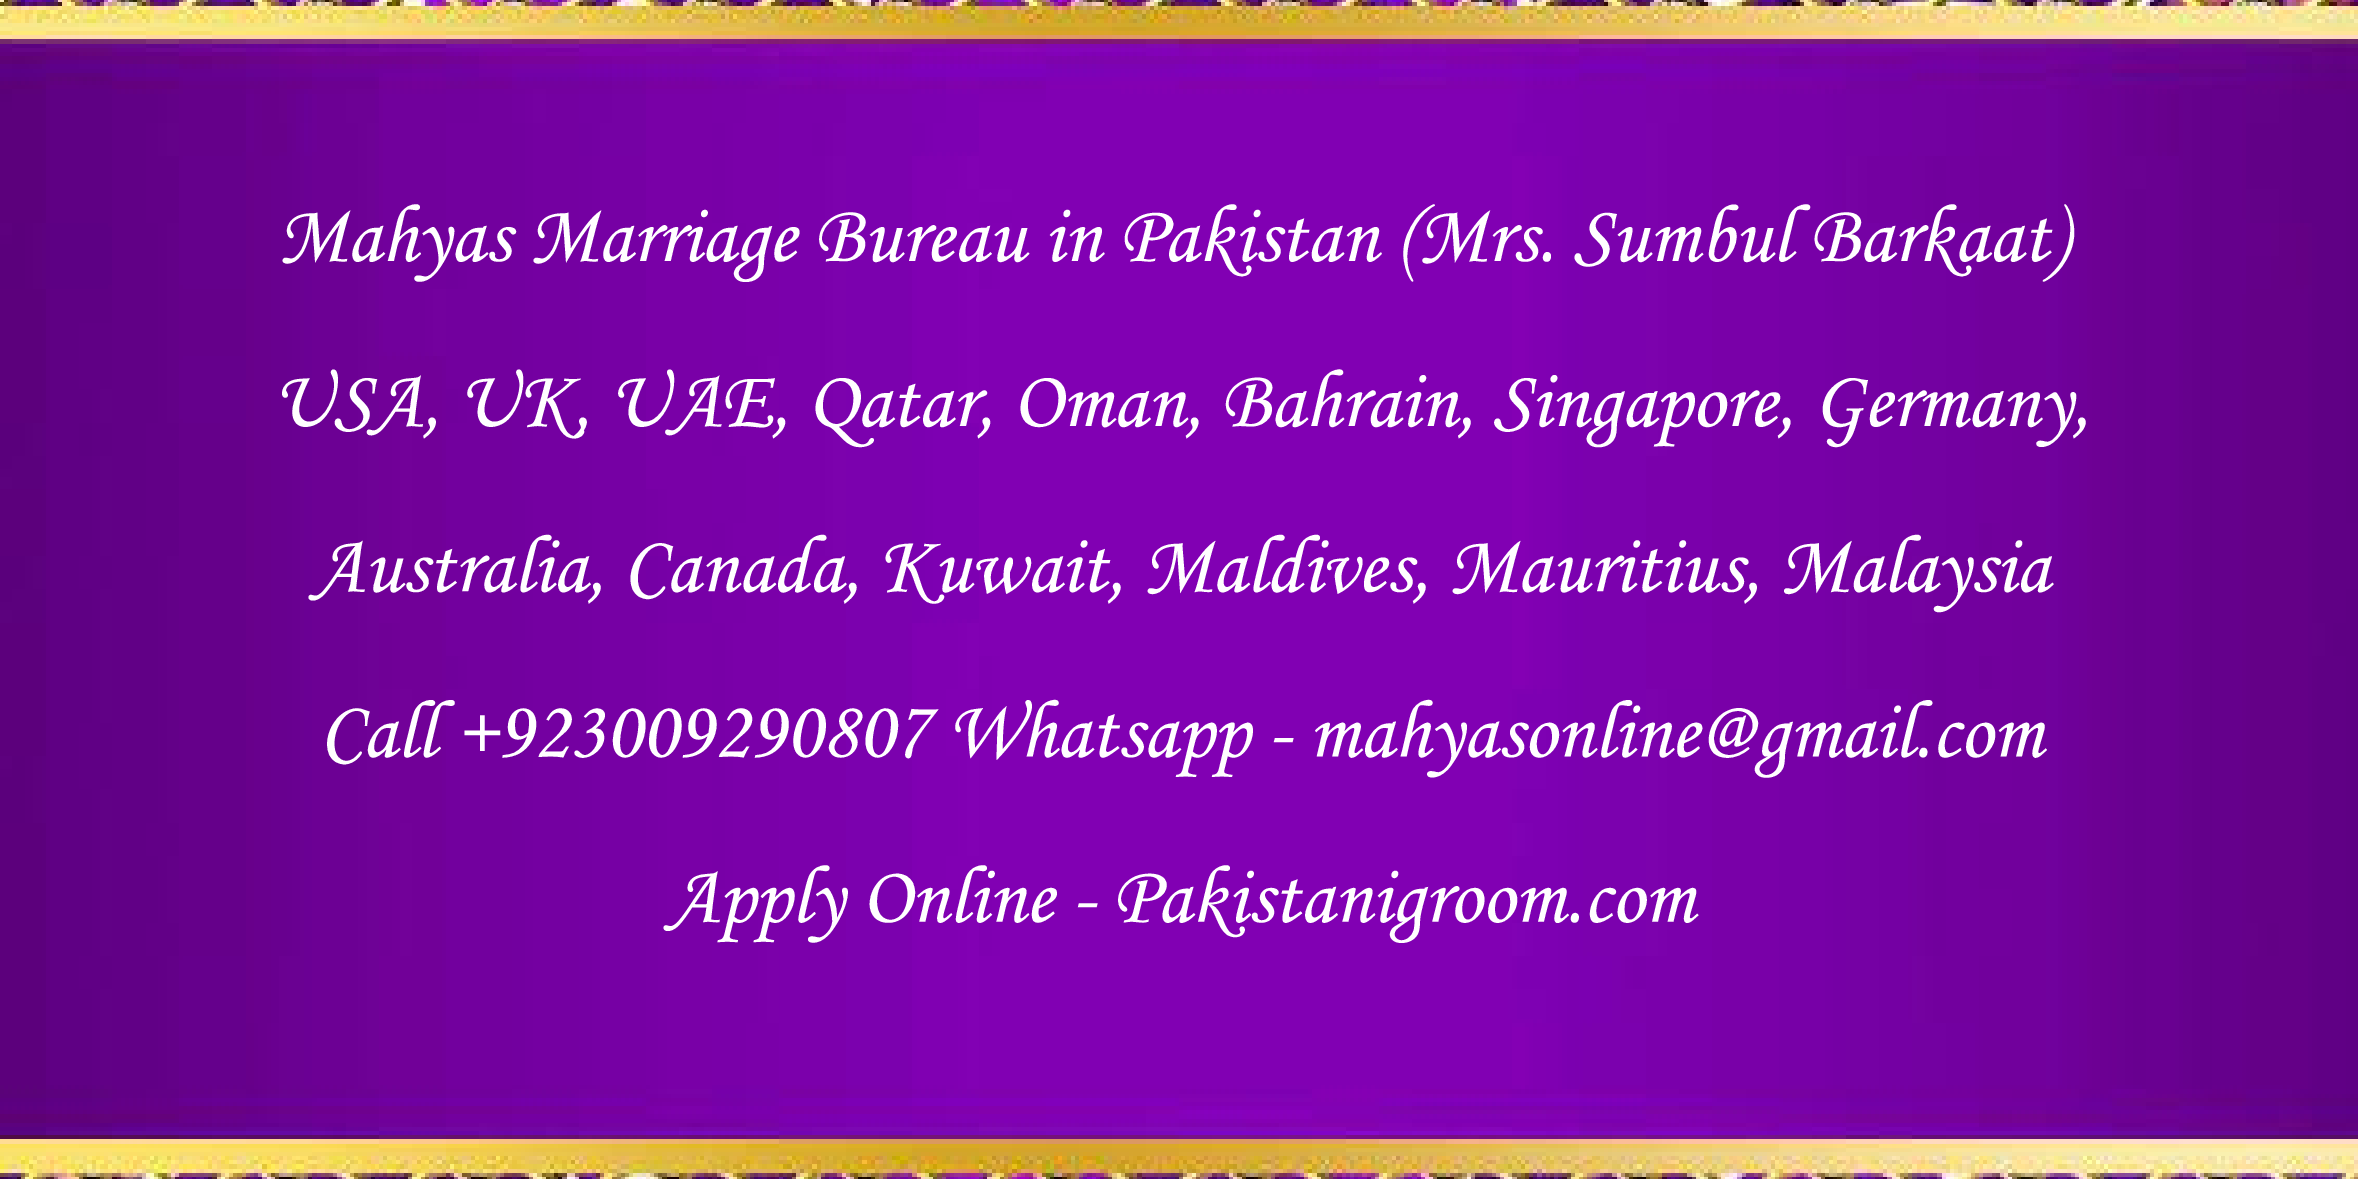 Mahyas-marriage-bureau-Karachi-Pakistan-for-Shia-Sunni-Remarriage-Divorce-Widow-Second-marriage-Punjabi-Pashto-Urdu-27.png